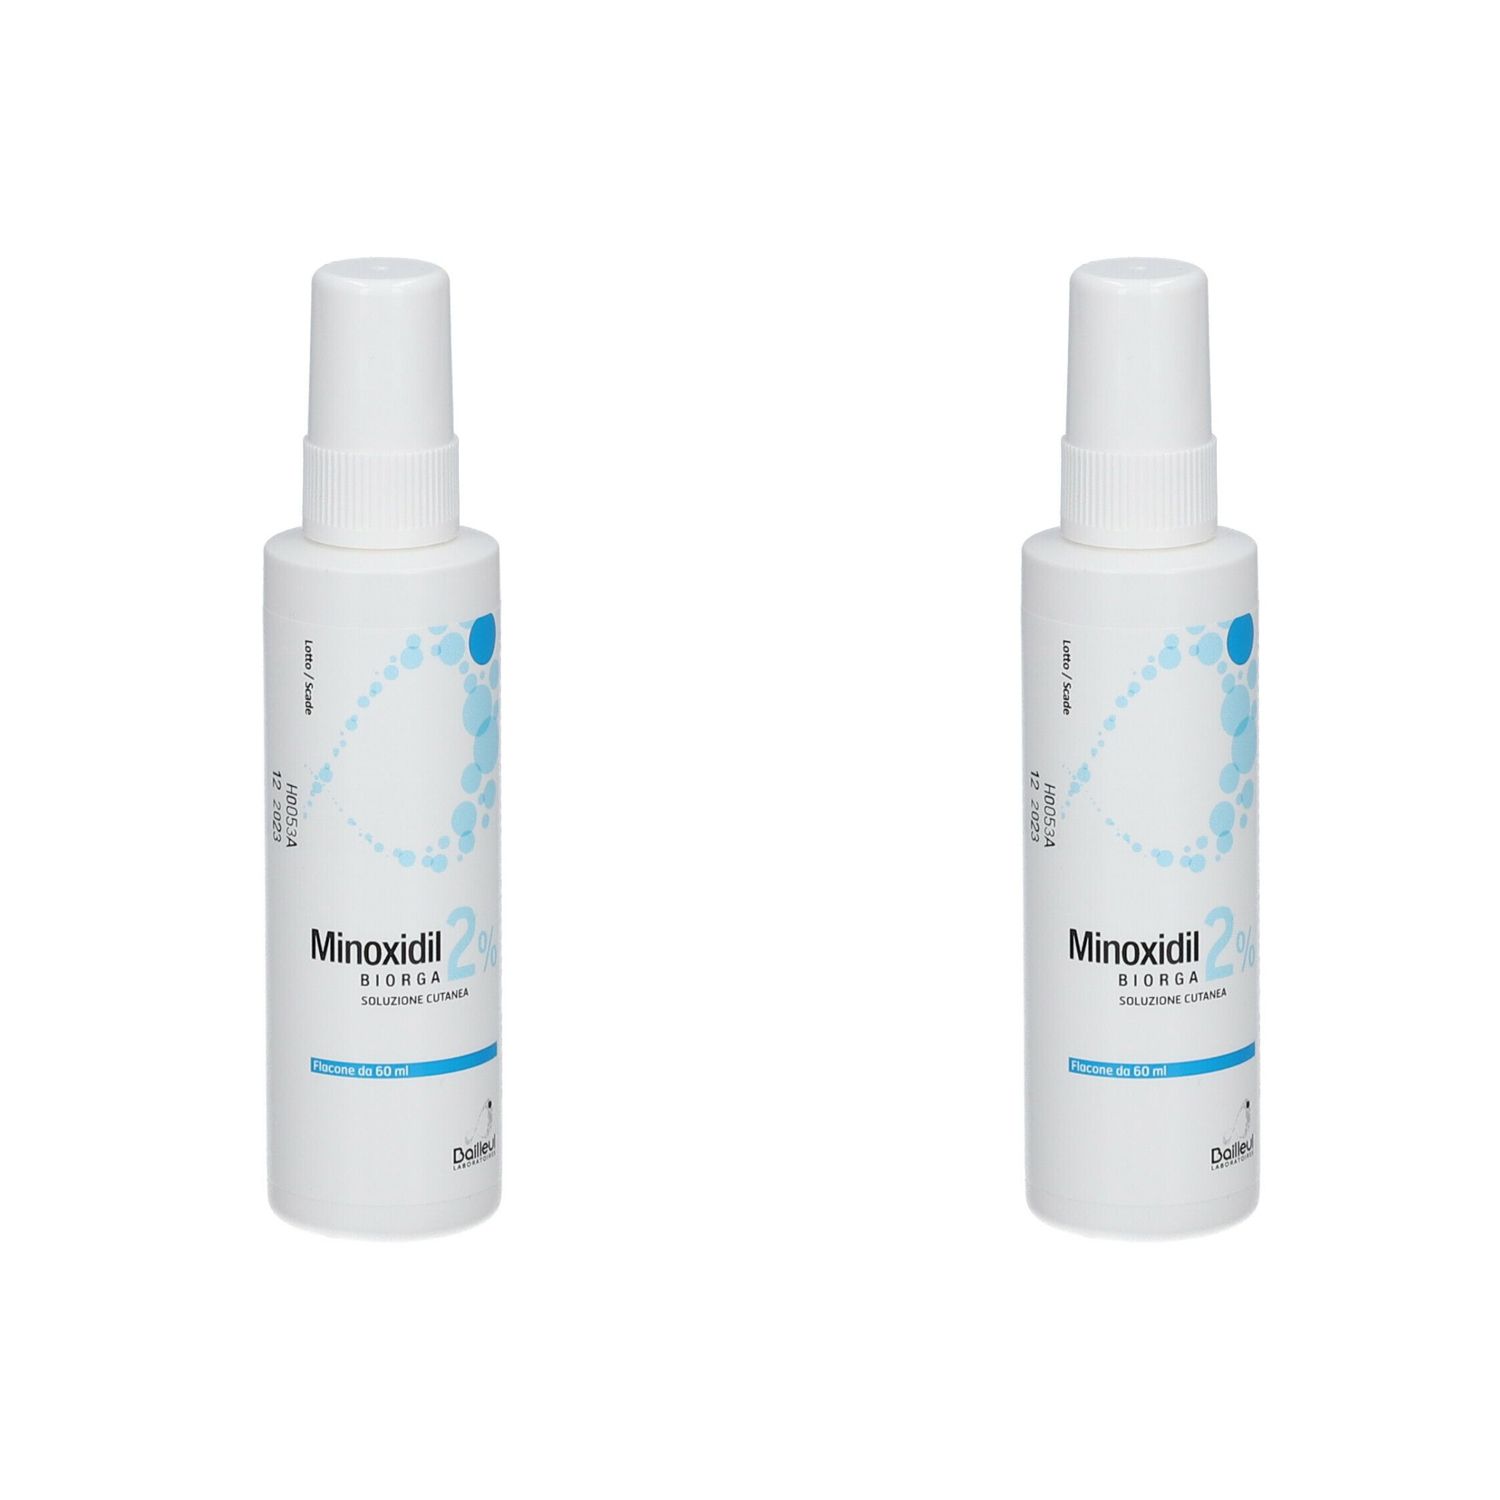 Minoxidil Biorga 2% Soluzione Cutanea 60ml Set da 2